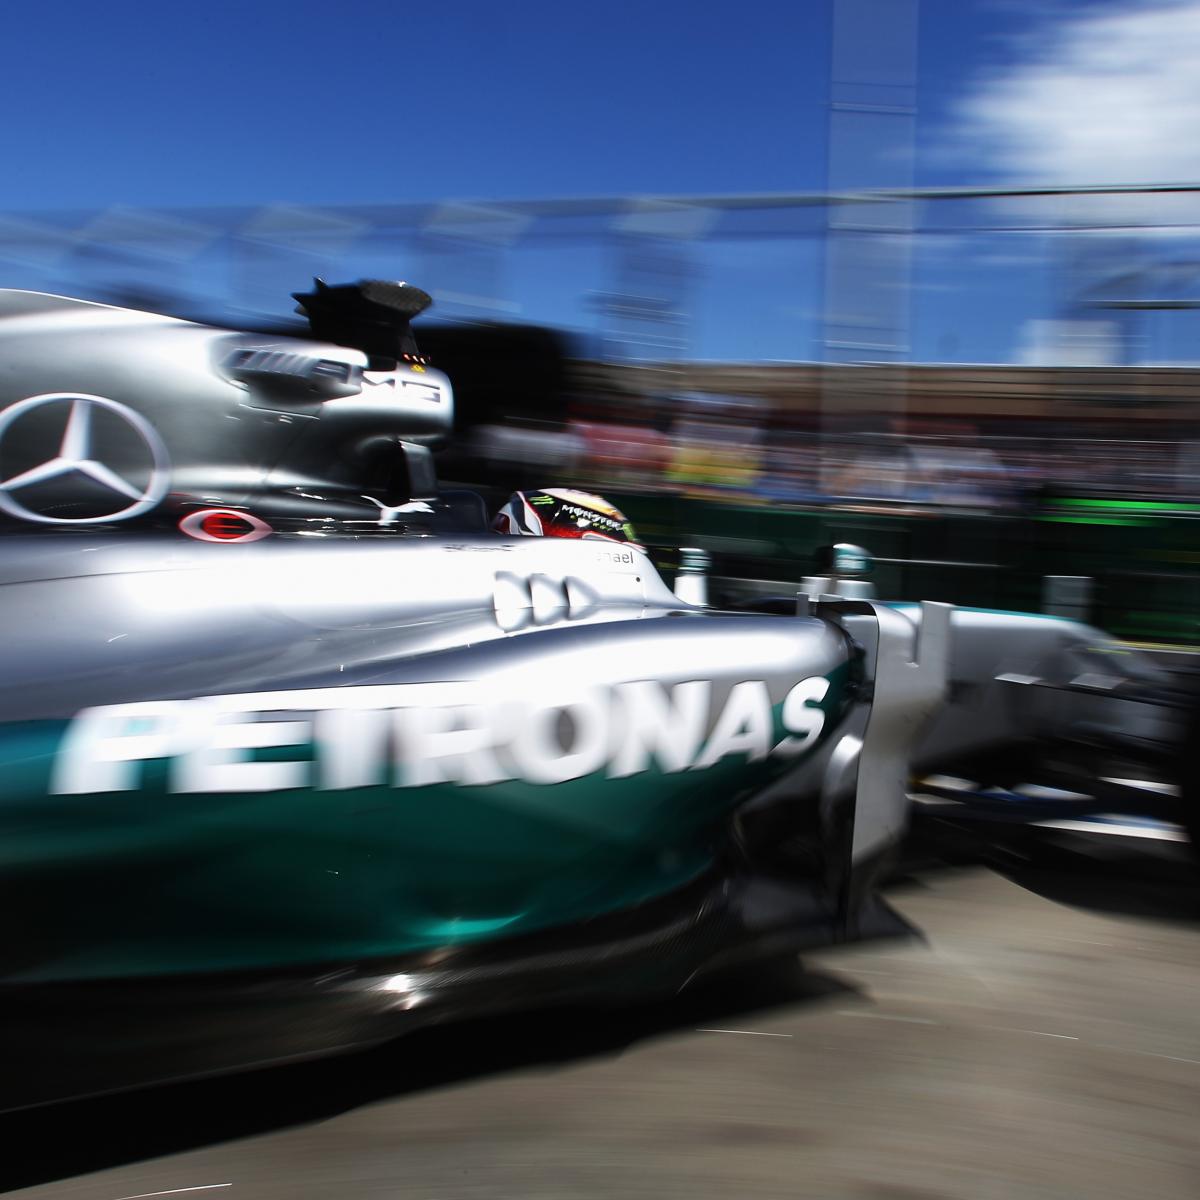 New Mercedes F1 car has no illegal parts, insists team principal Toto Wolff, Mercedes GP